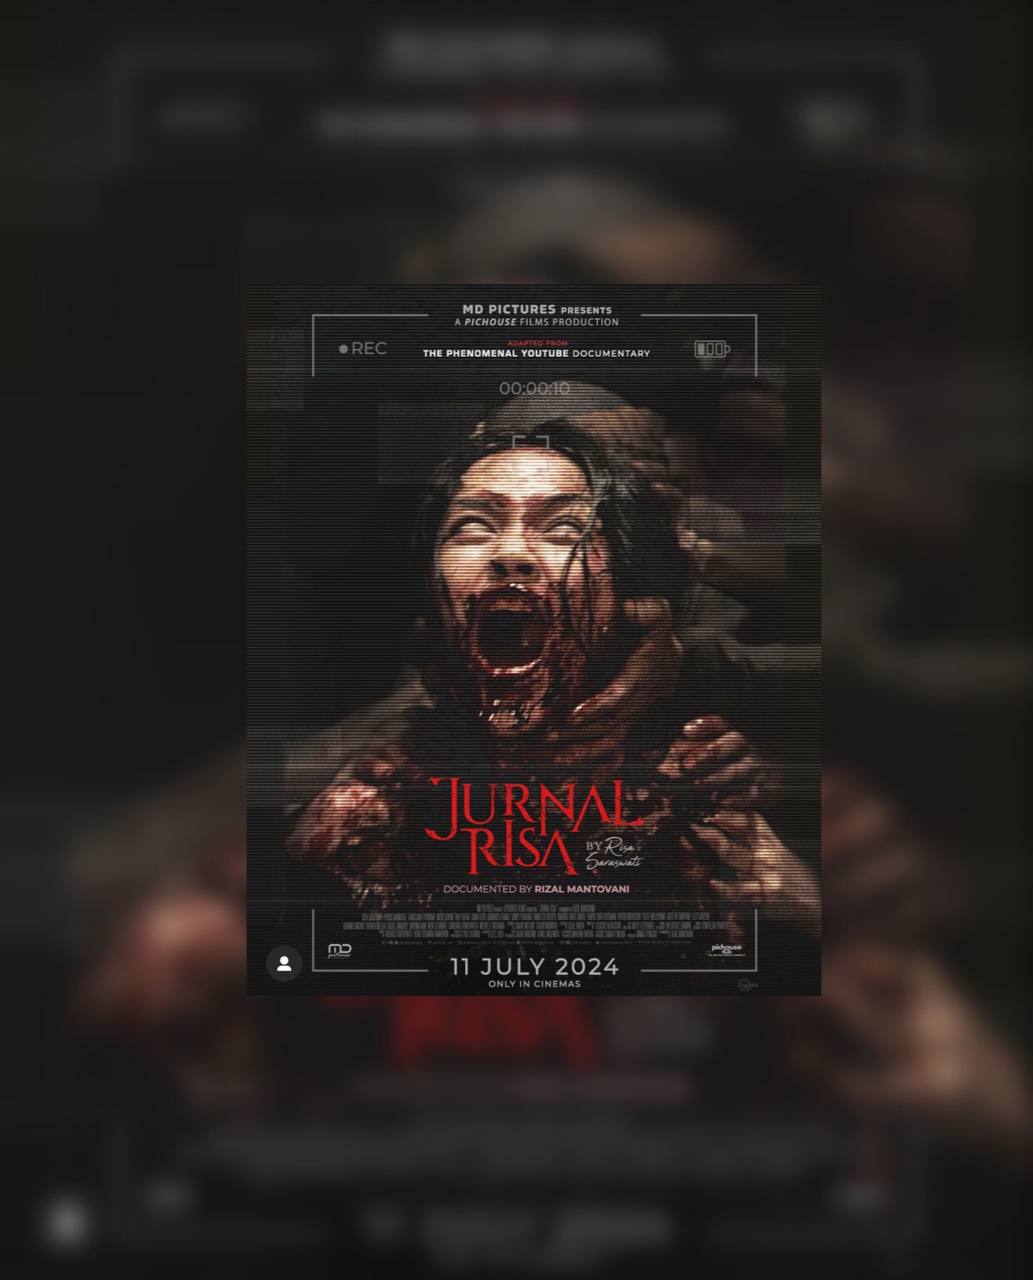 Sinopsis Film dan Jadwal Tayang Jurnal Risa The Movie by Risa Saraswati, Simak Selegkapnya Disini!